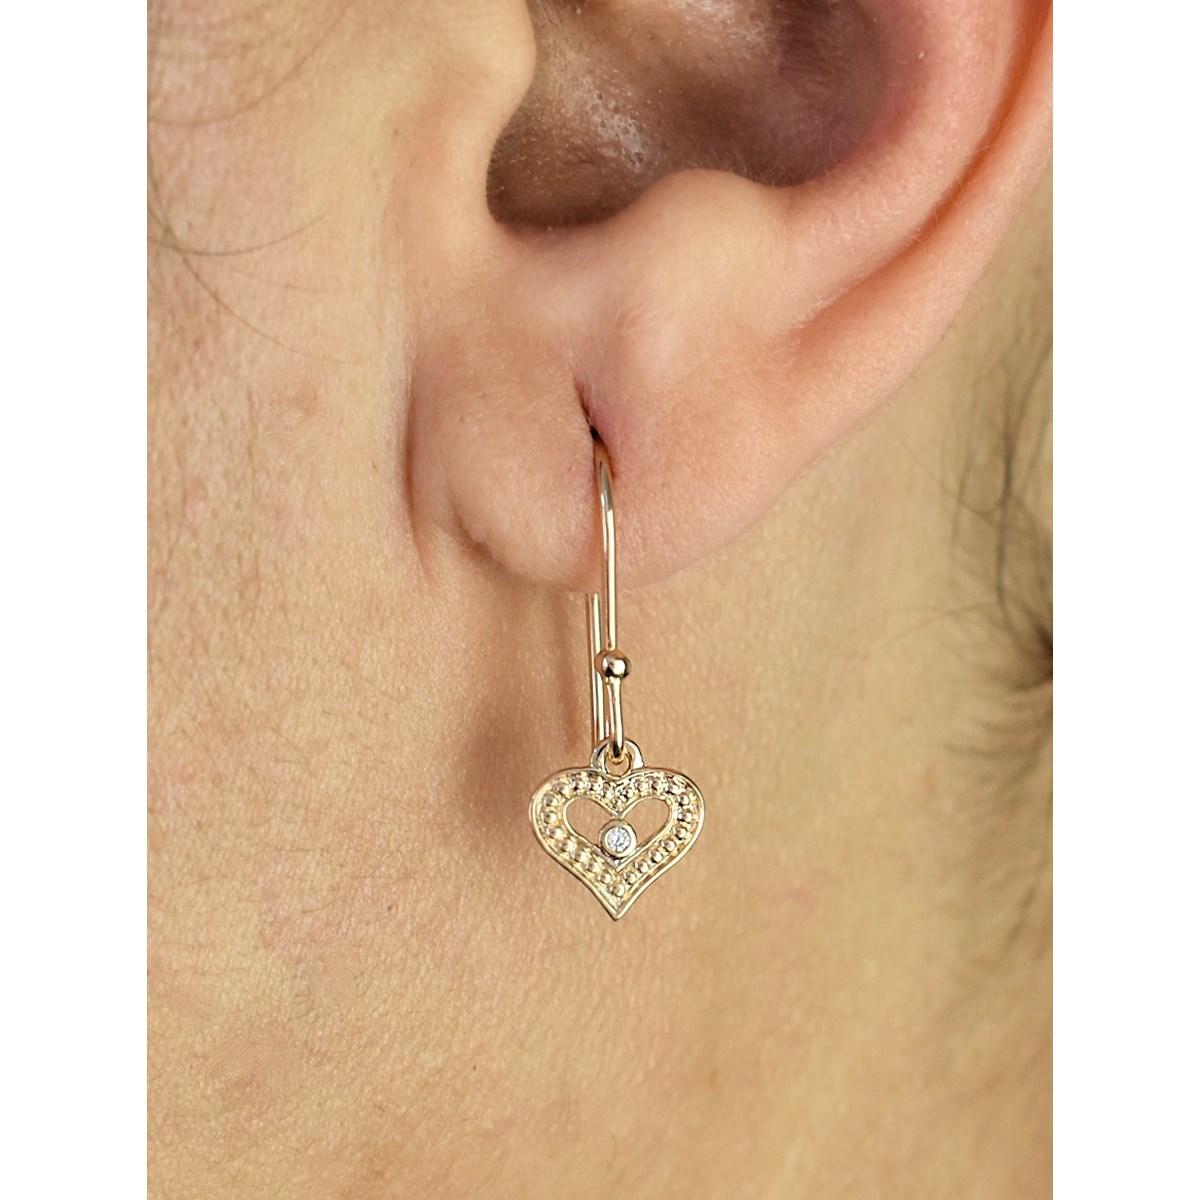 Boucles d'oreilles coeur ajouré oxyde de zirconium Plaqué OR 750 3 microns - vue 3